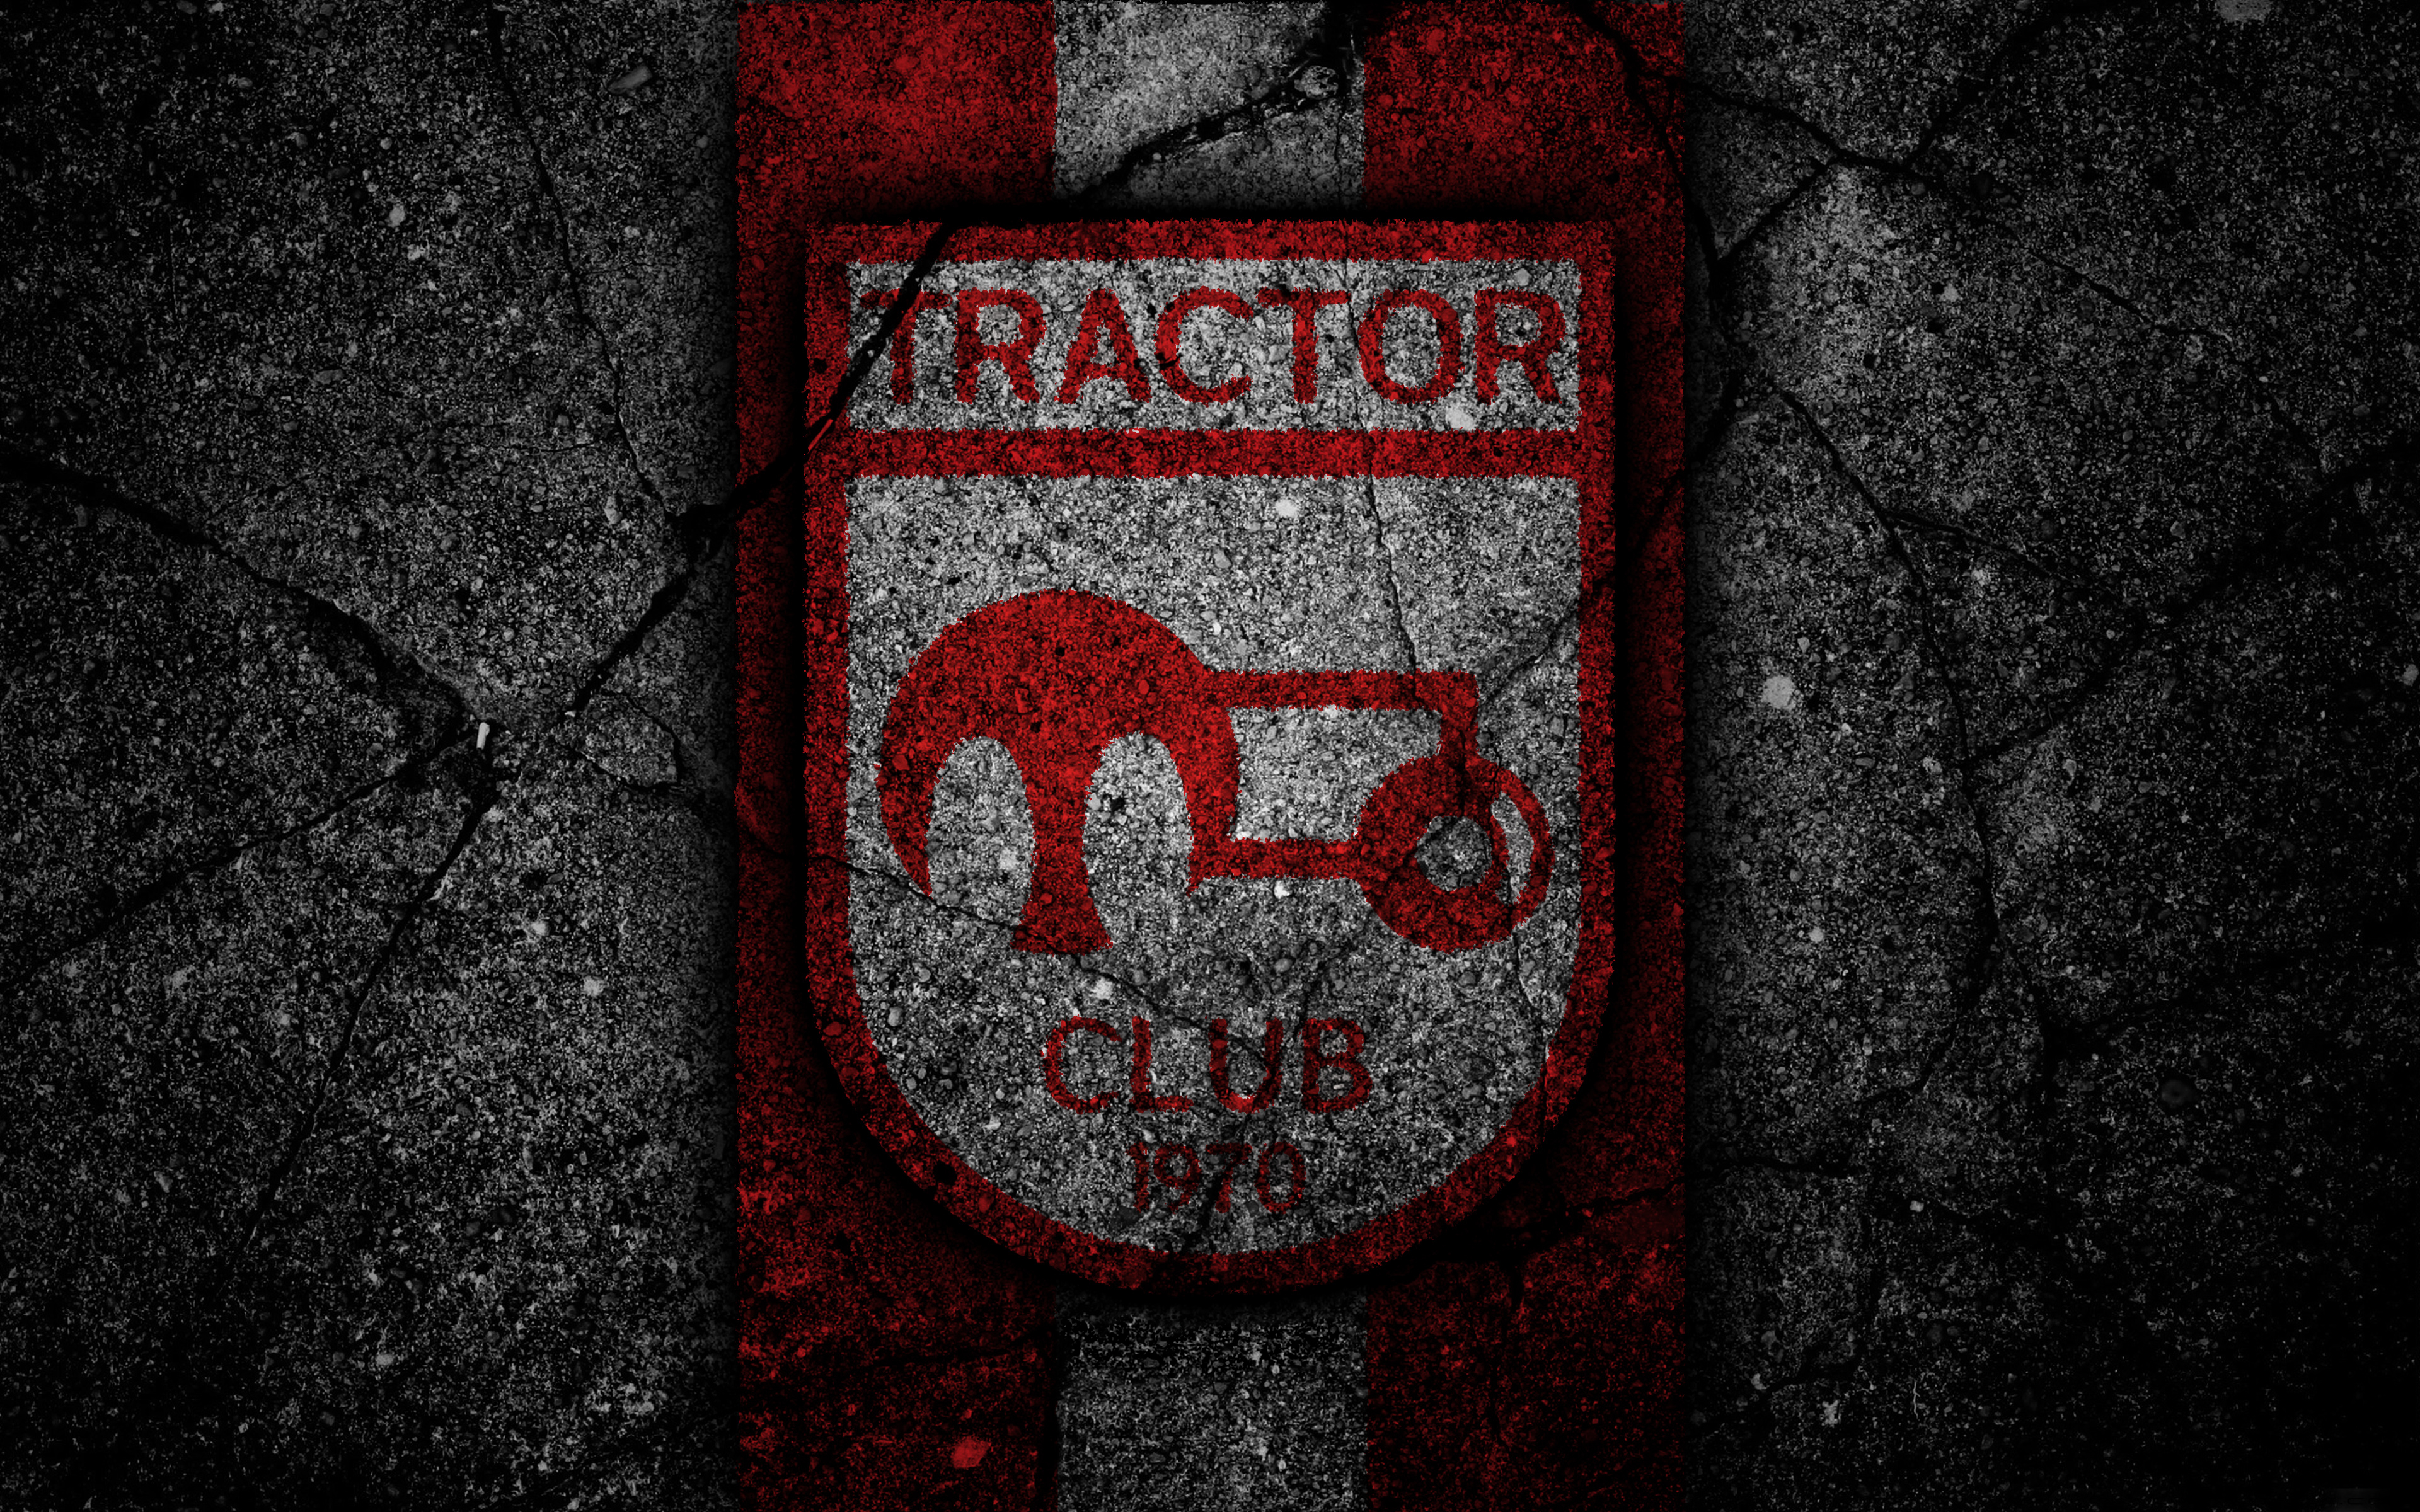 Tractor FC - Club profile